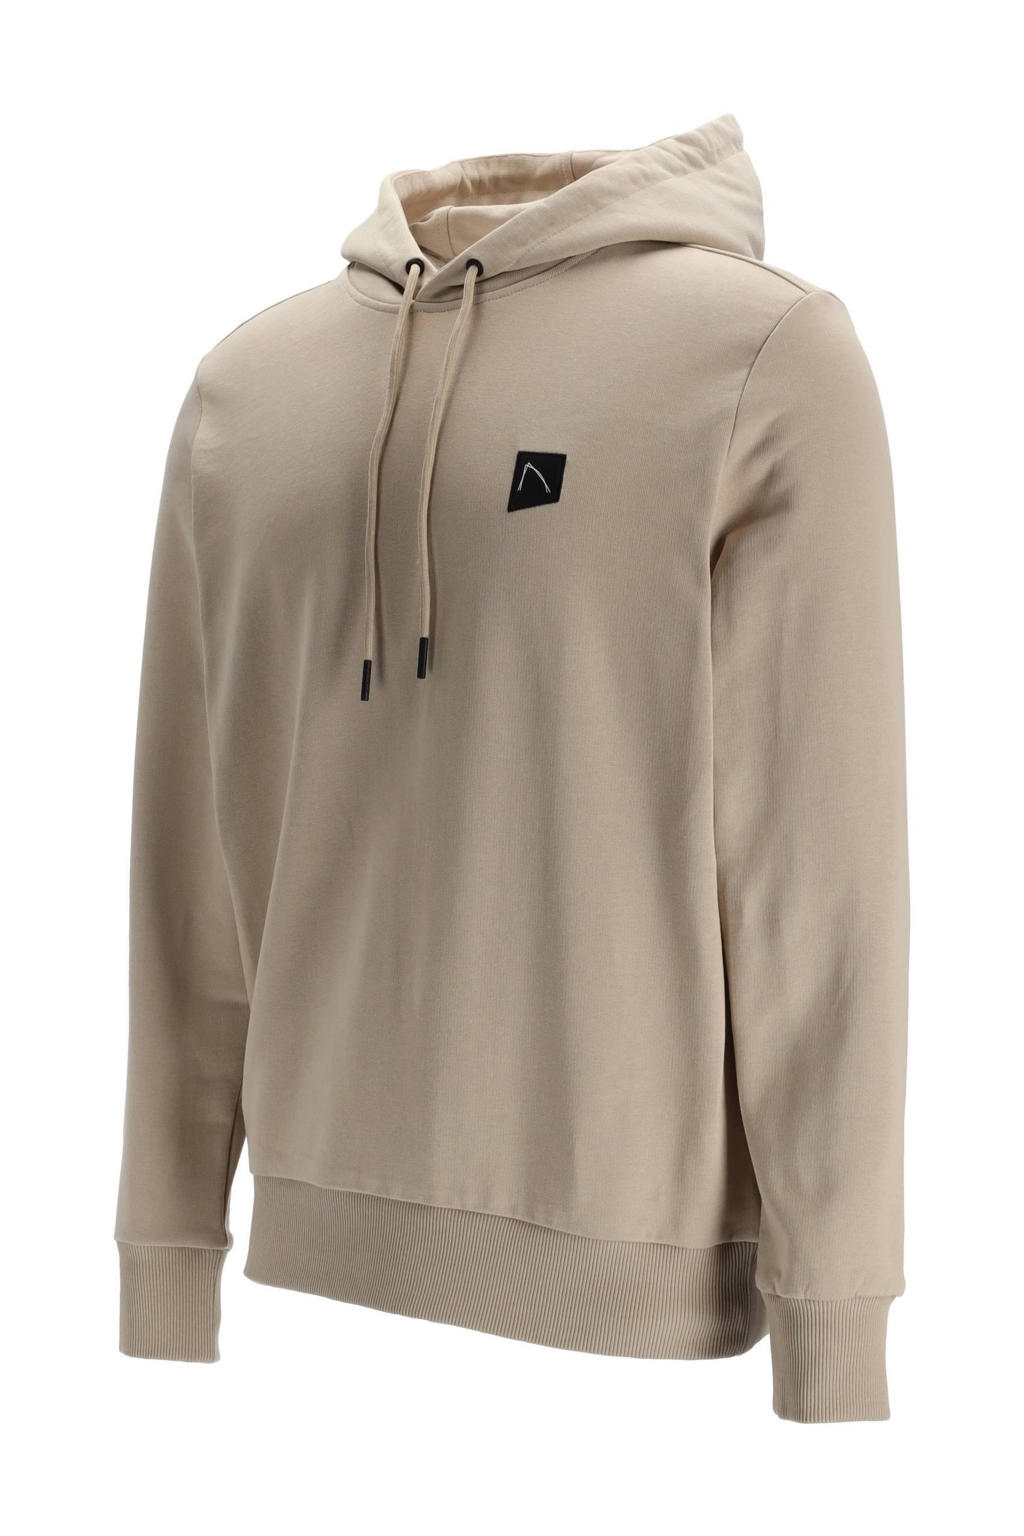 CHASIN' hoodie Ronny met logo  taupe